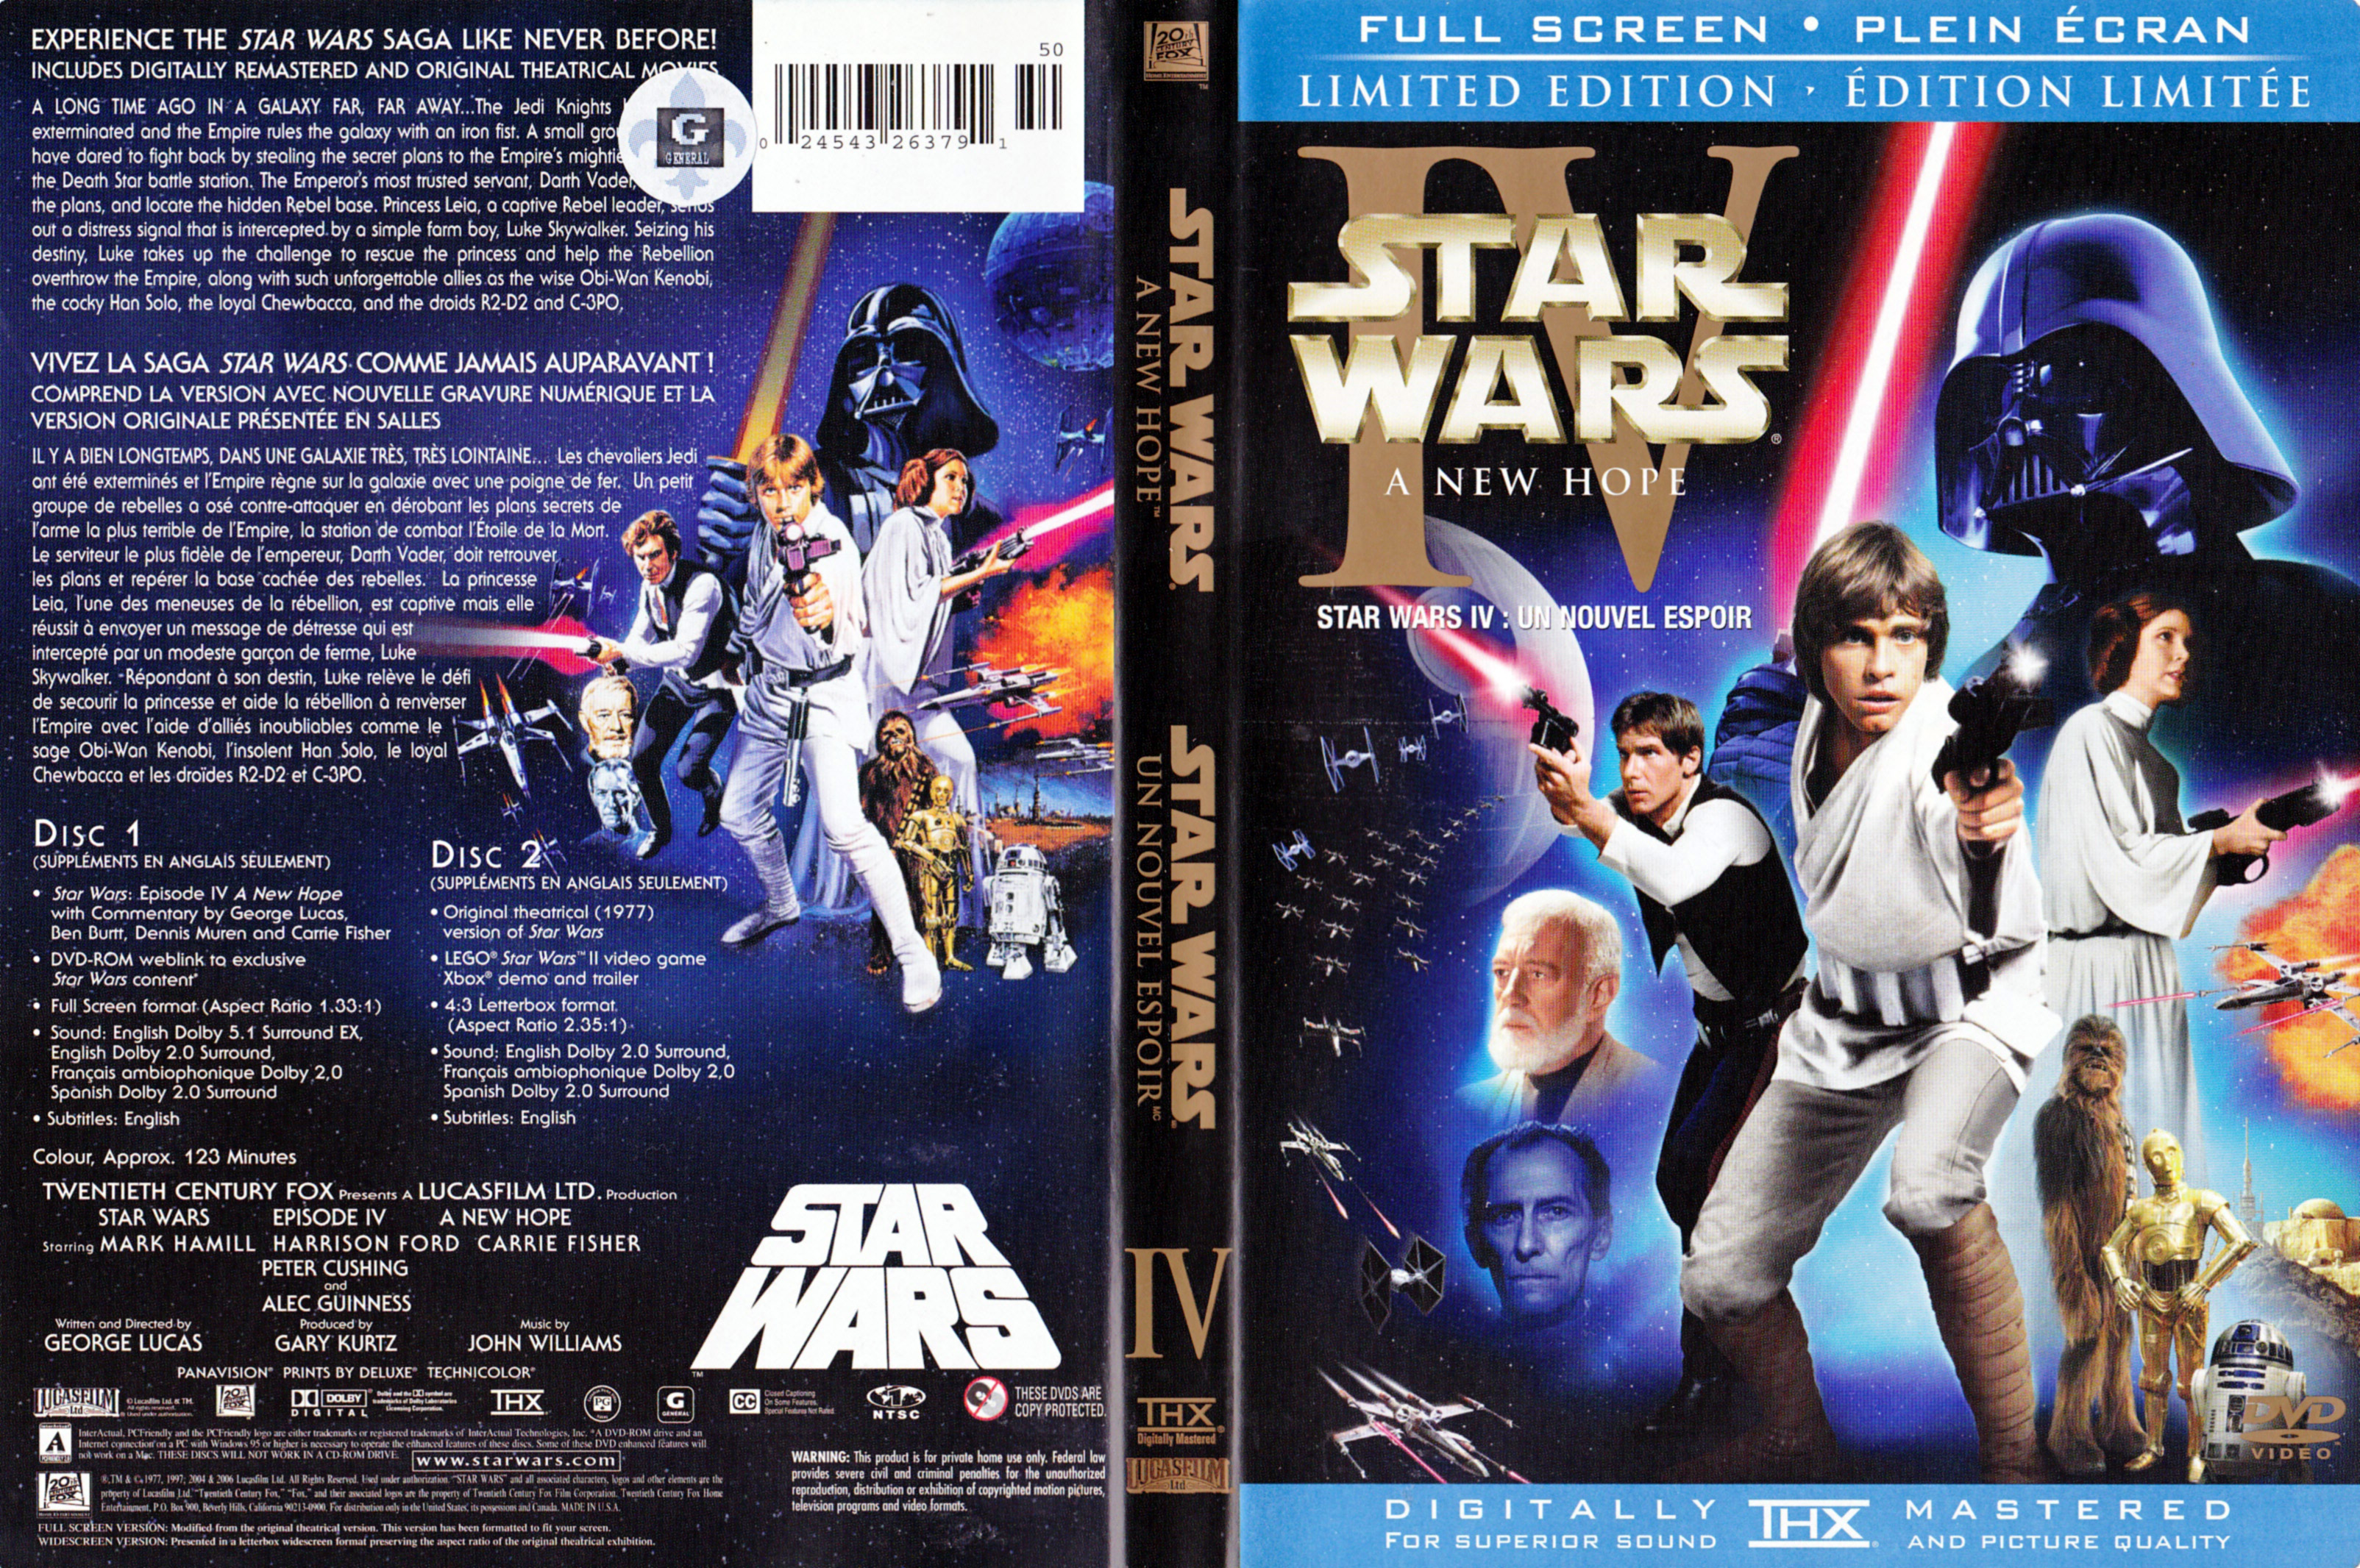 Jaquette DVD Star wars un nouvel espoir - Star wars A New hope (Canadienne)